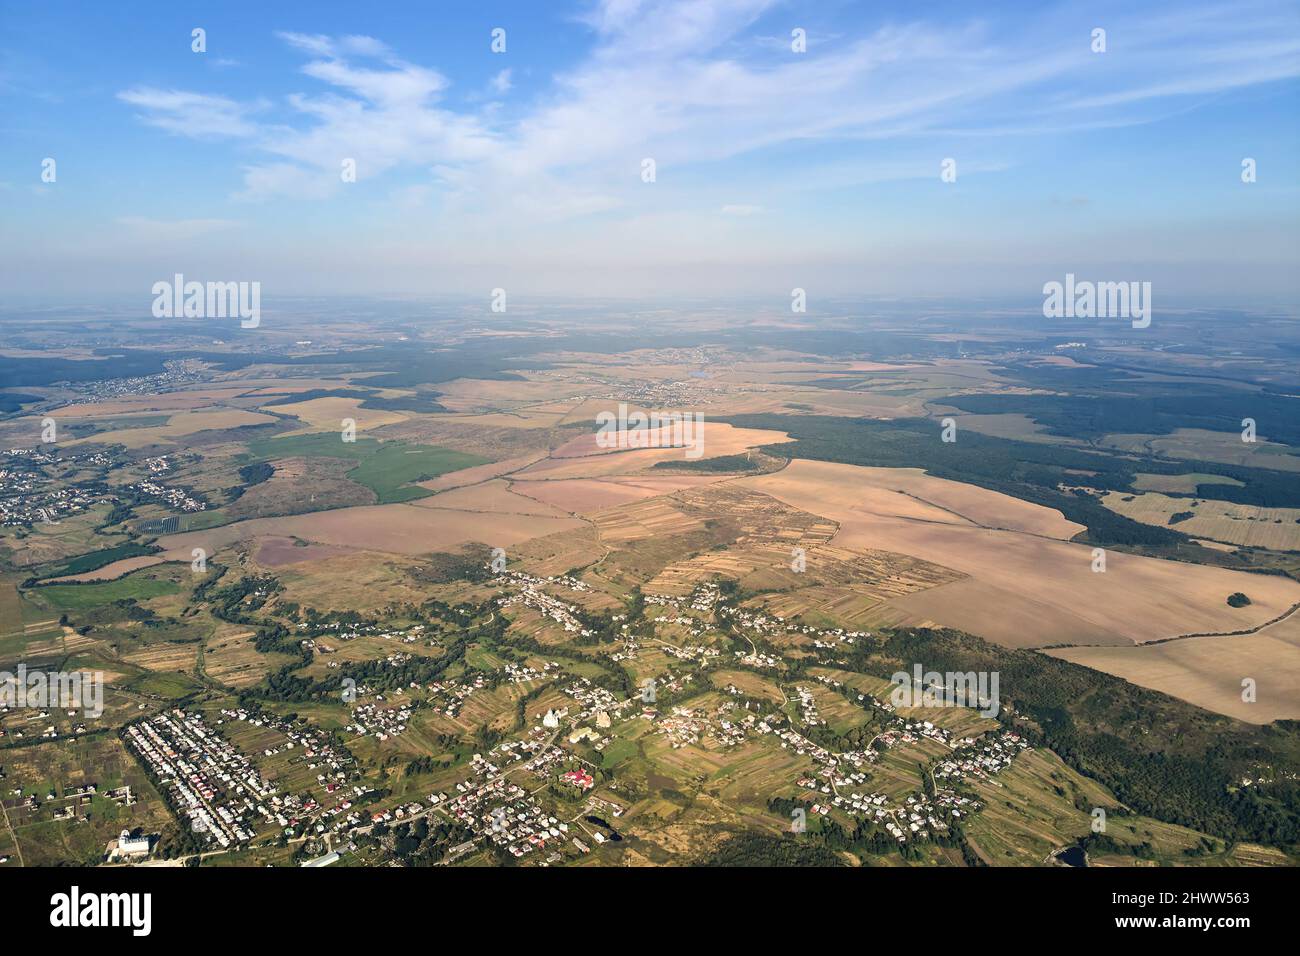 Vista aerea di campi agricoli e case sparse in lontananza in zona rurale. Foto Stock